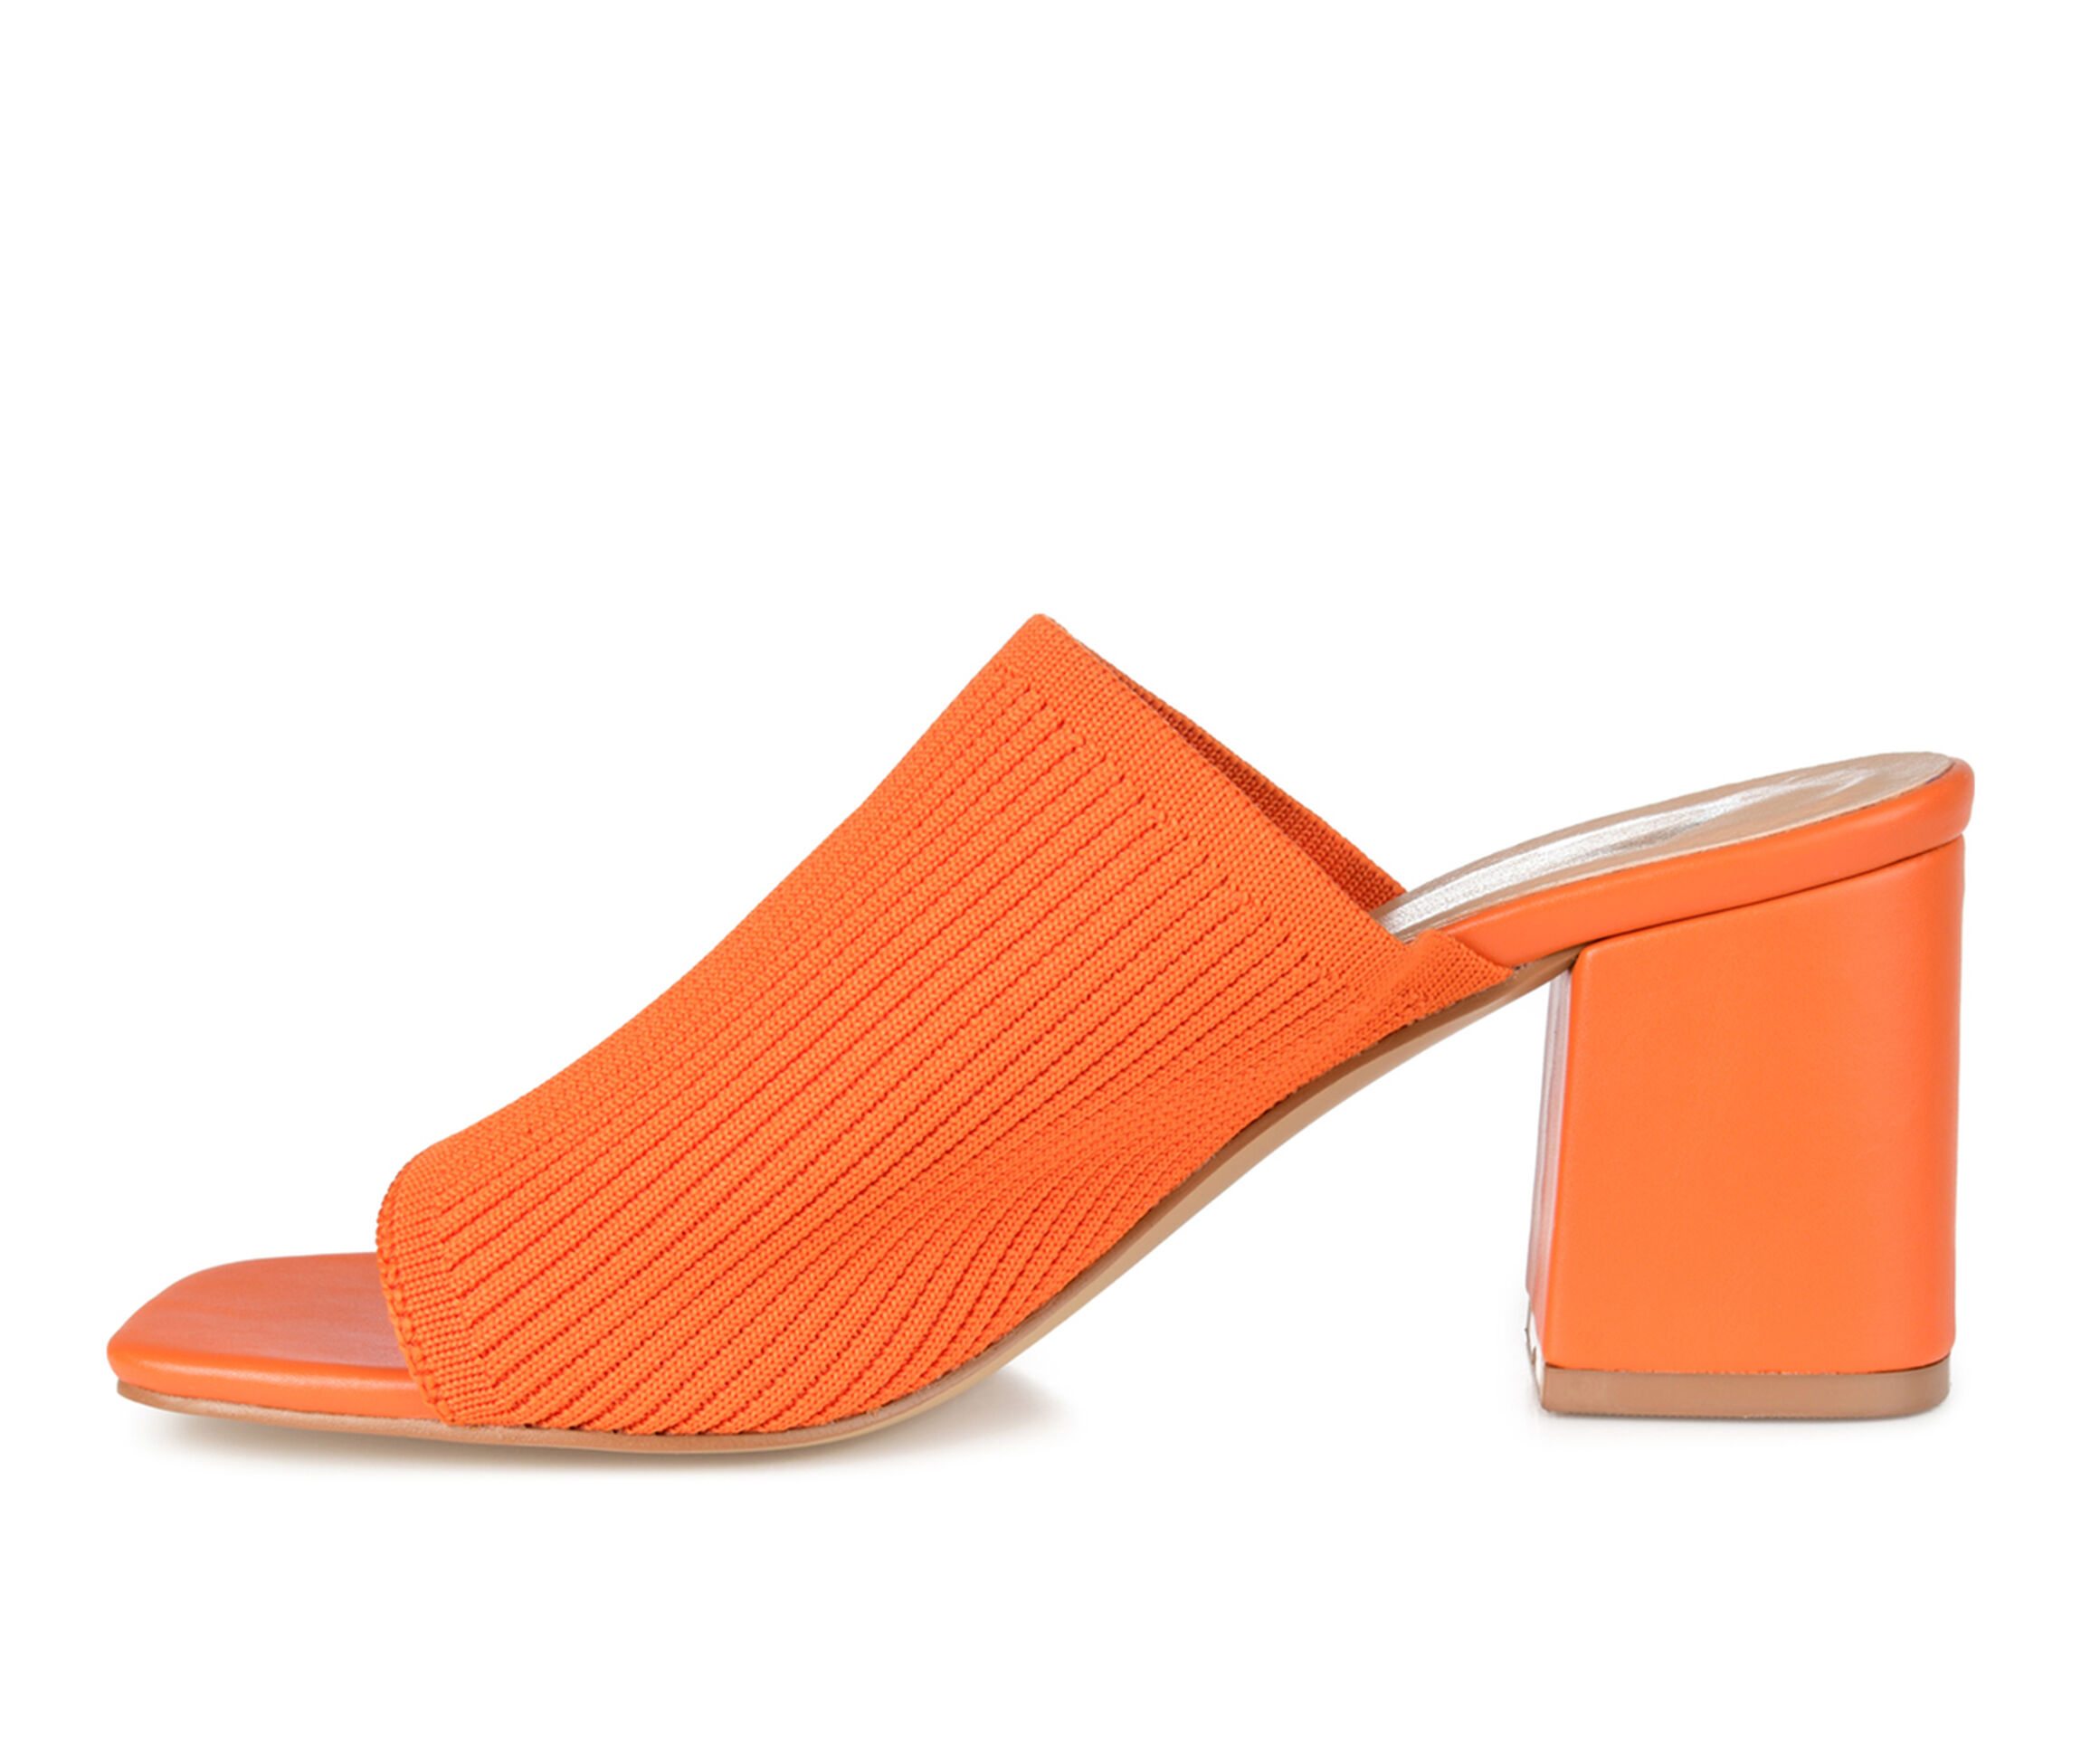 Women's Journee Collection Lorenna Dress Sandals in Orange Wide Size 7